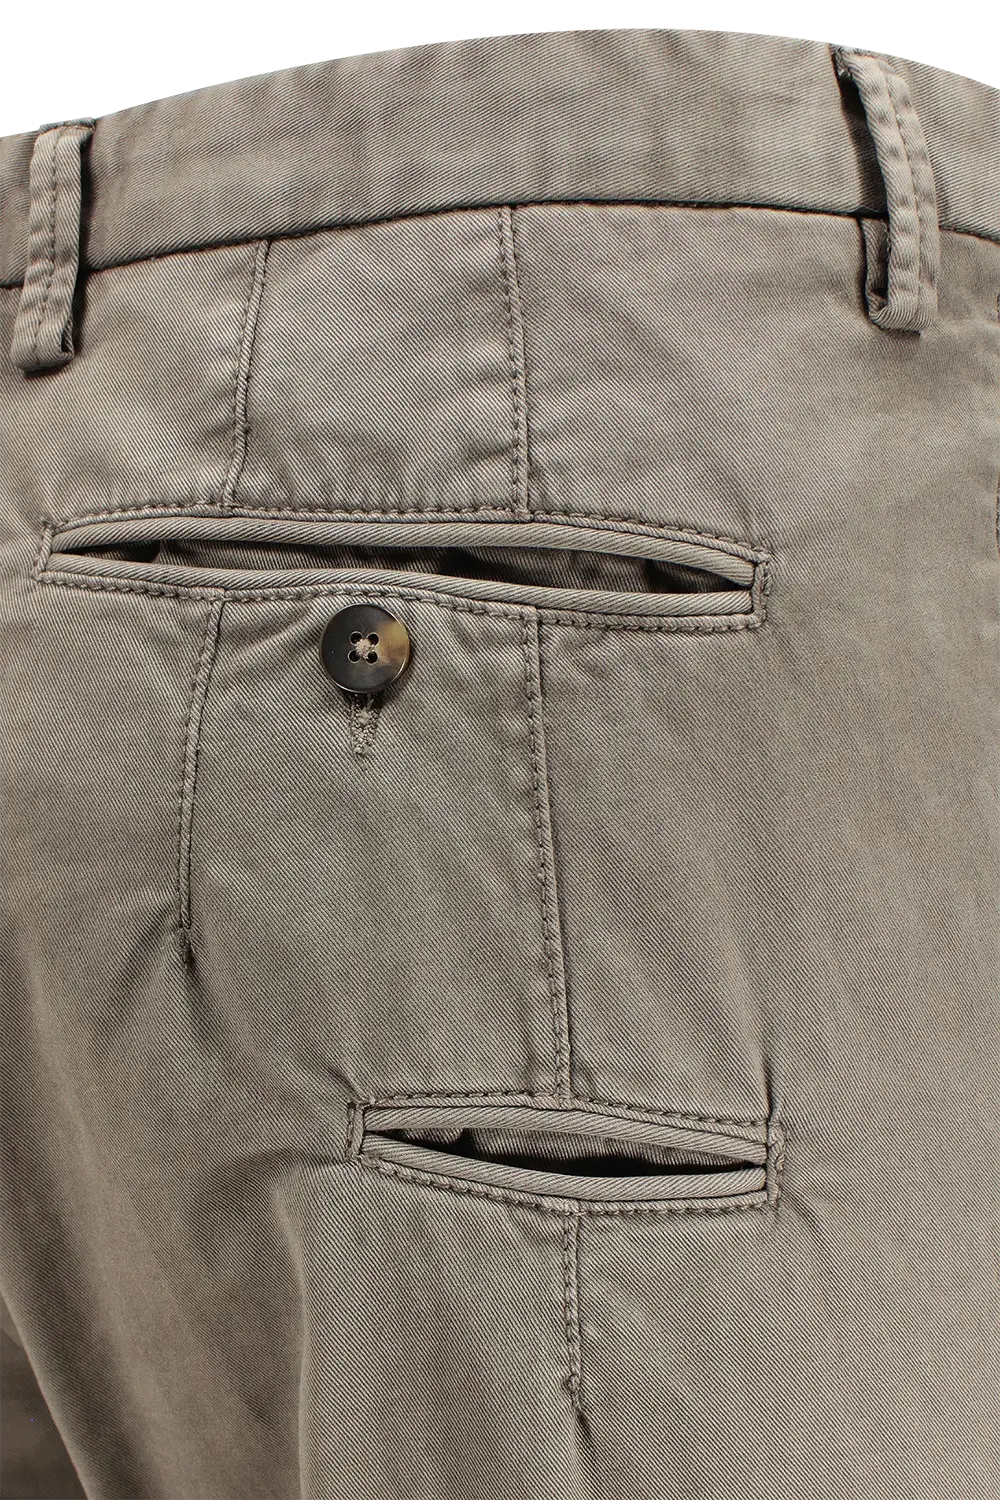 Pantalone in cotone tinto in capo grigio tasche